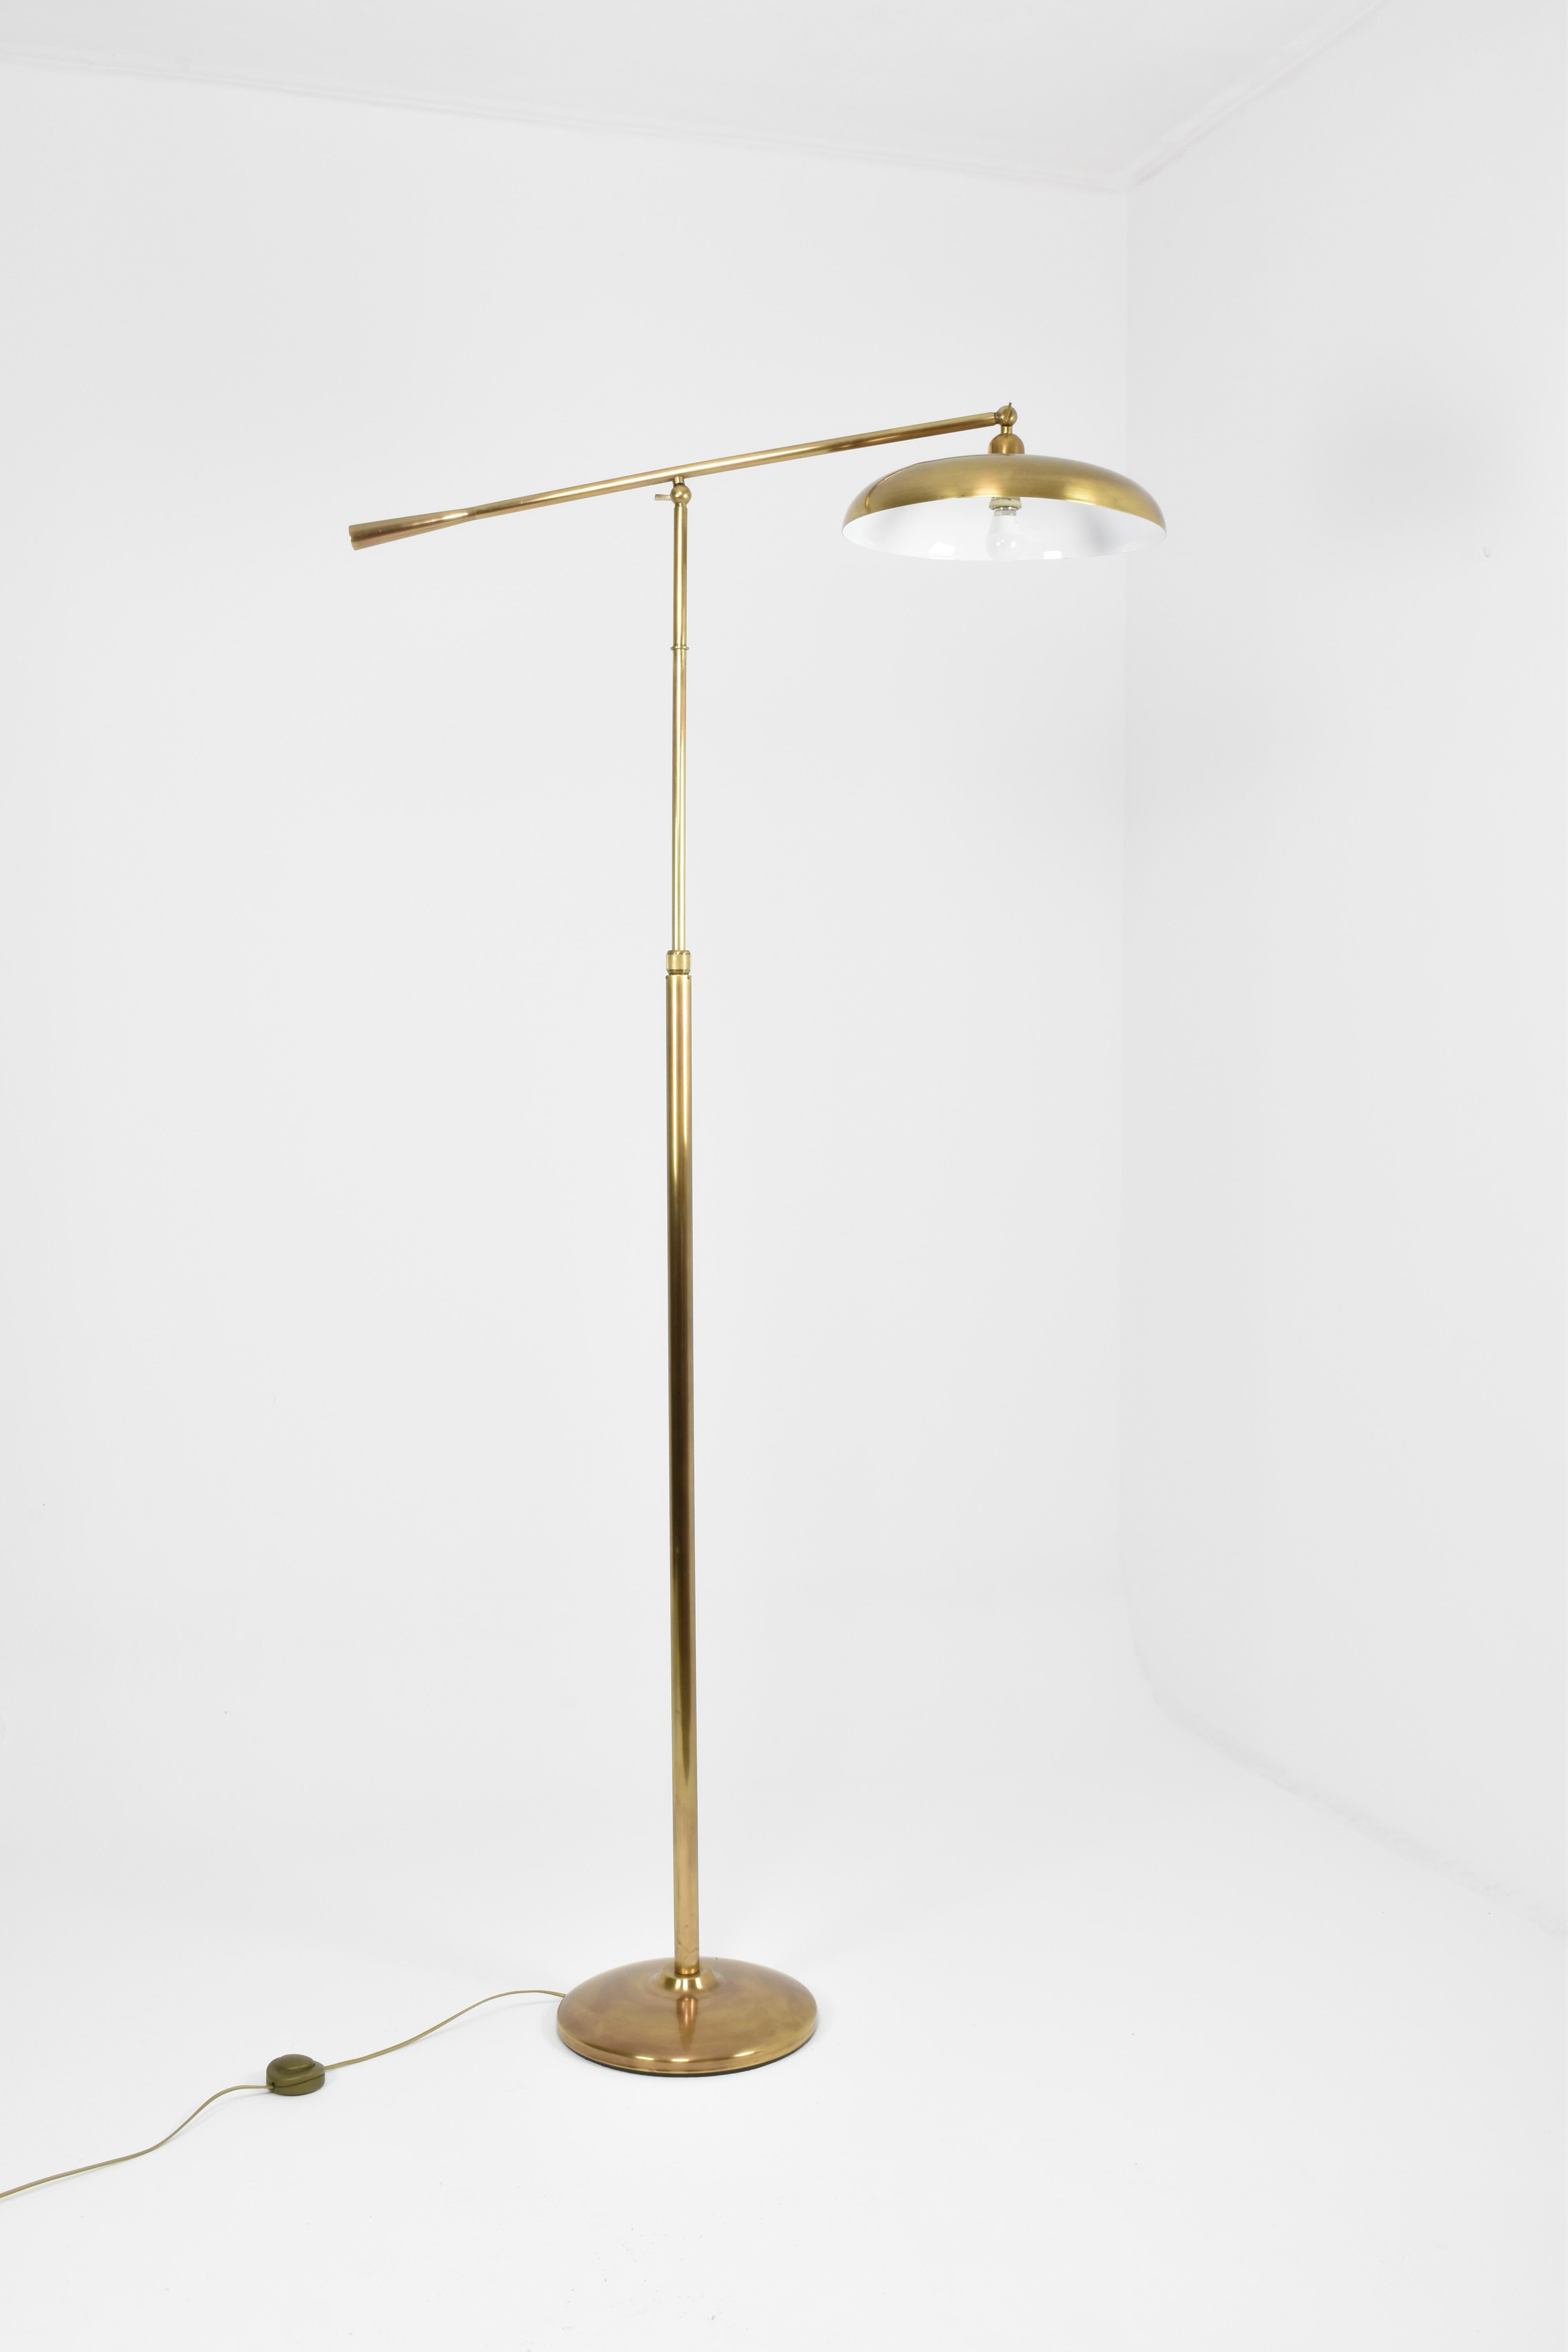 Italienische Vintage-Stehlampe aus Messing aus den 1960er Jahren, mit verstellbarem Arm und rundem Schirm. Dieses praktische Beleuchtungselement wurde mit viel Liebe zum Detail gefertigt und ist zeitlos und elegant. 

Maximale Höhe von 195